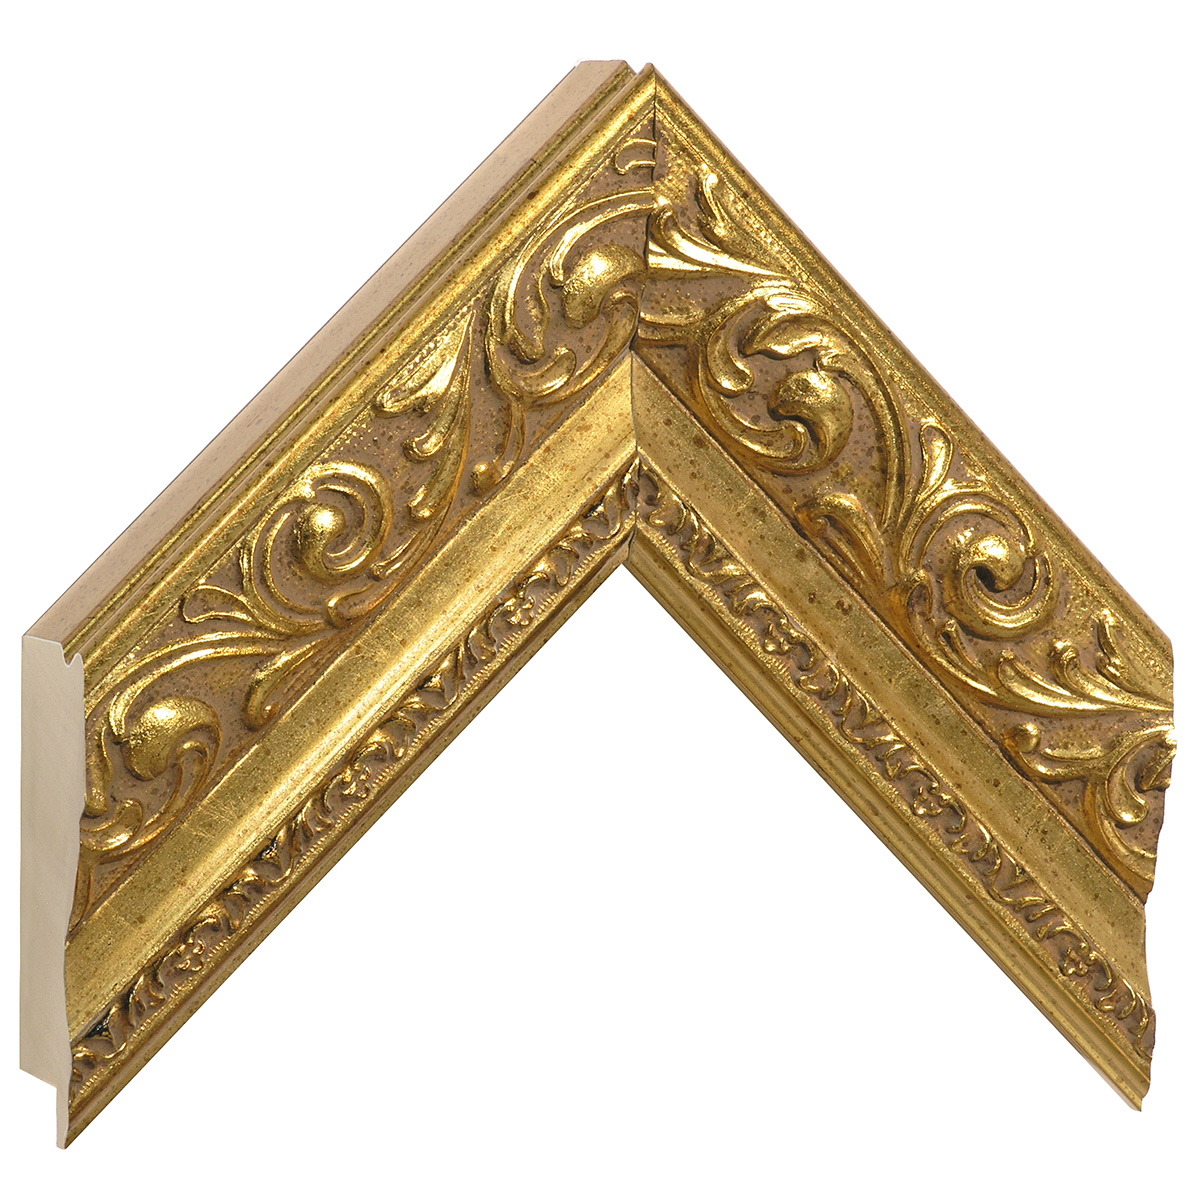 Profil ayous Lăț.64 mm Înălț.44 - auriu, decorațiuni în relief - Mostră